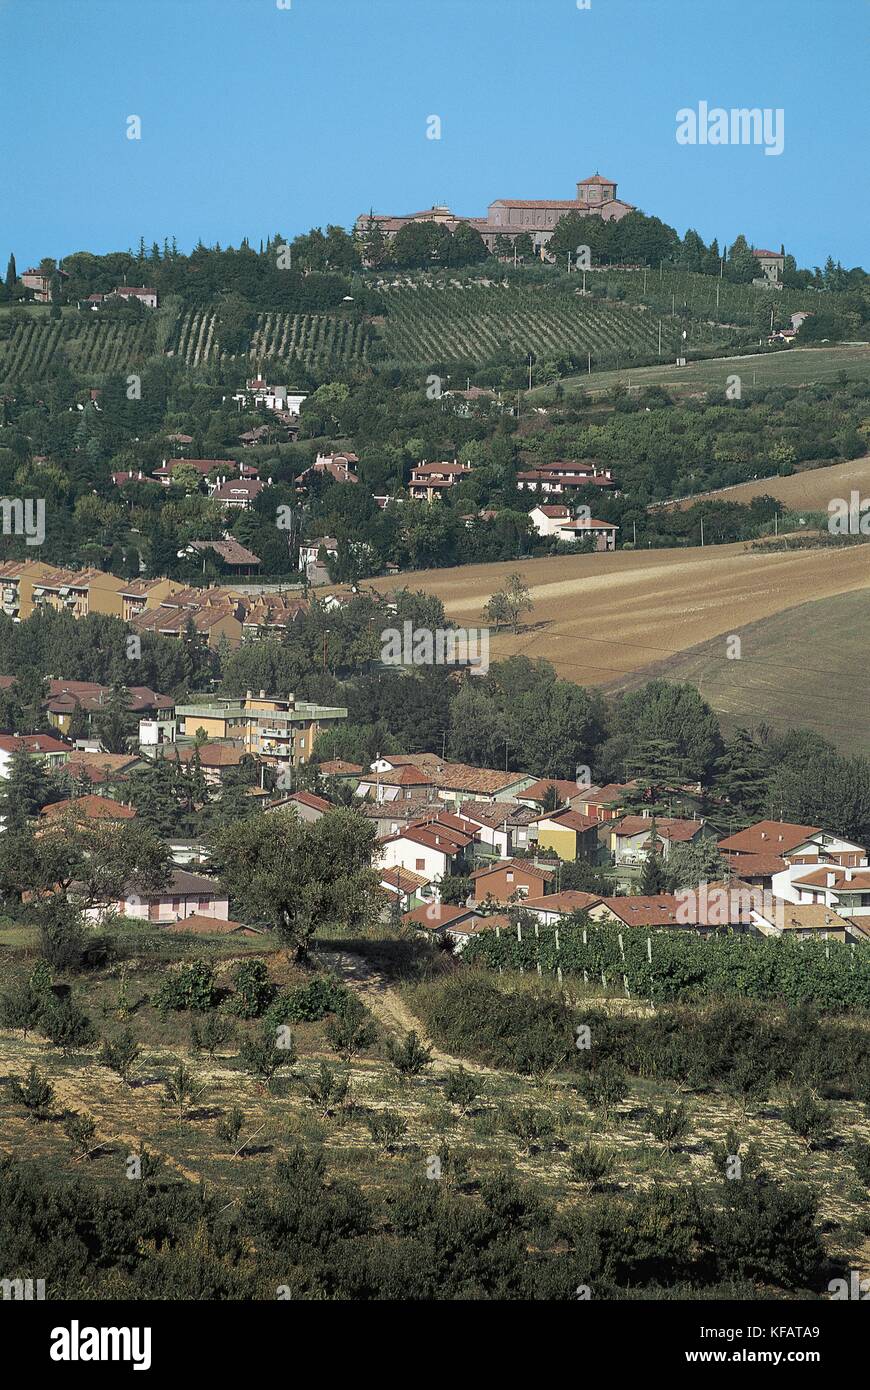 Italia, la región de Emilia Romagna, Cesena, abadía de Nuestra Señora del Monte Foto de stock